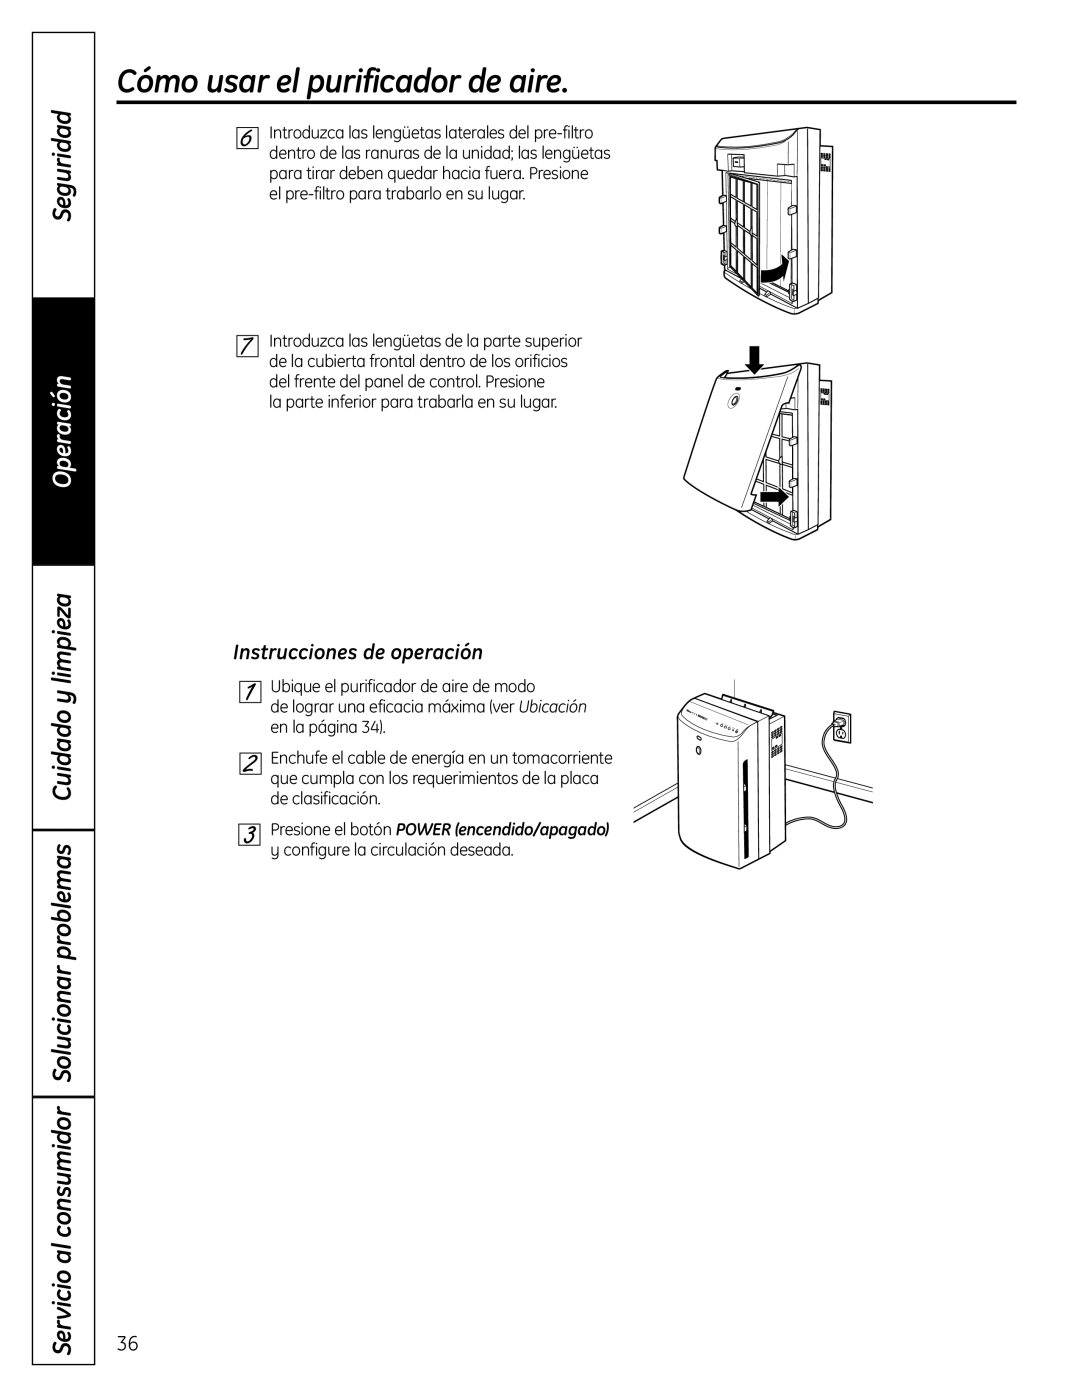 GE AFHC32AM, AFHC21AM owner manual Instrucciones de operación, Cómo usar el purificador de aire, Seguridad, Operación 